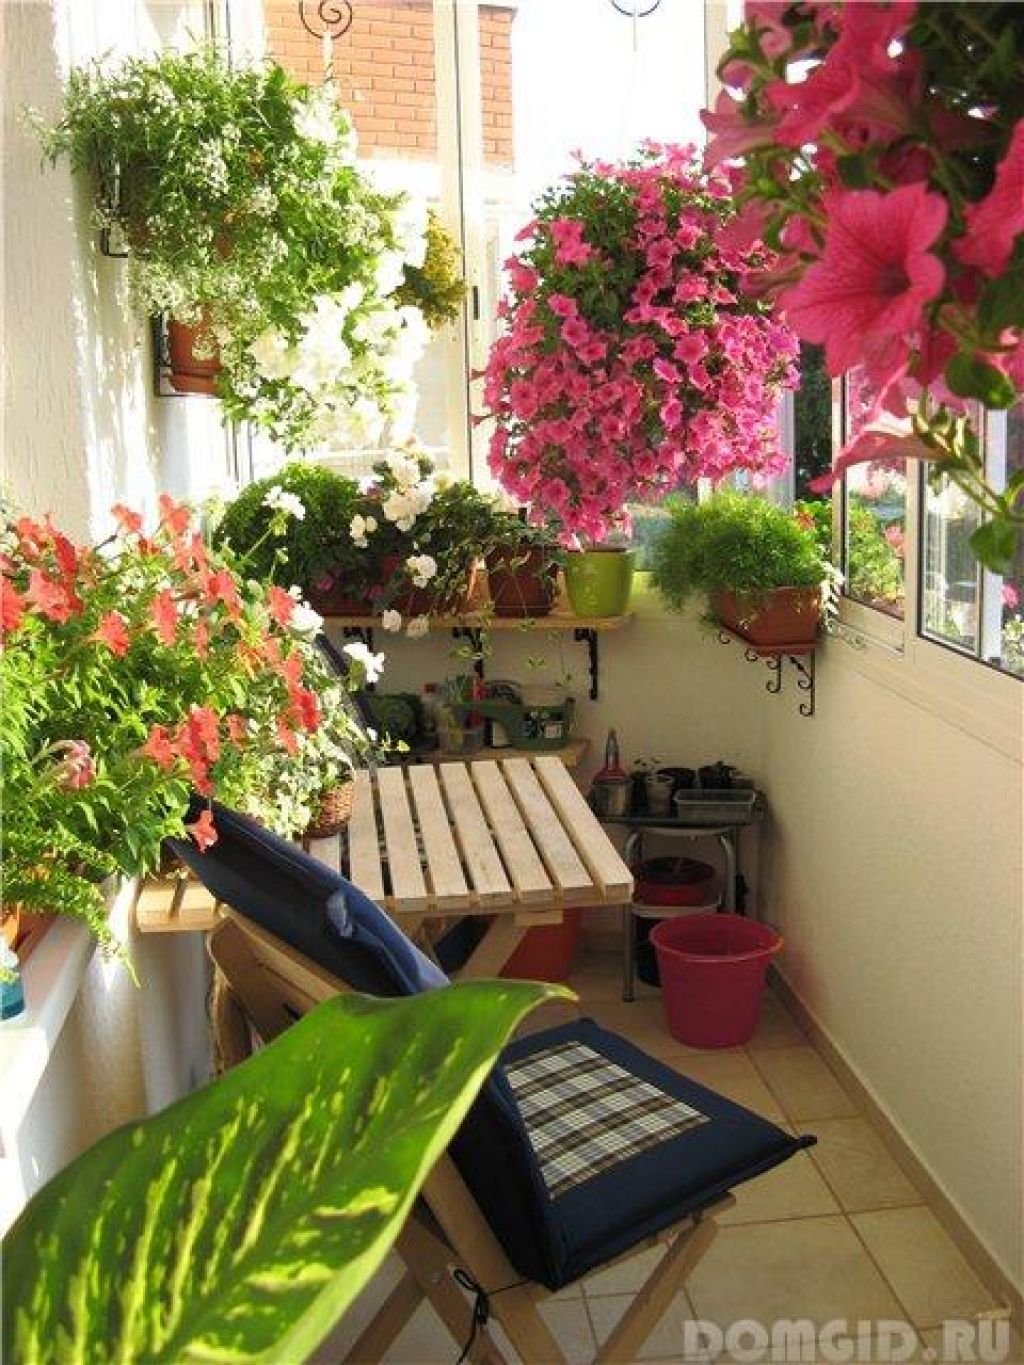 Северный балкон. Сад оранжерея на балконе. Озеленение балкона. Цветы на лоджии. Комнатные растения на балконе.